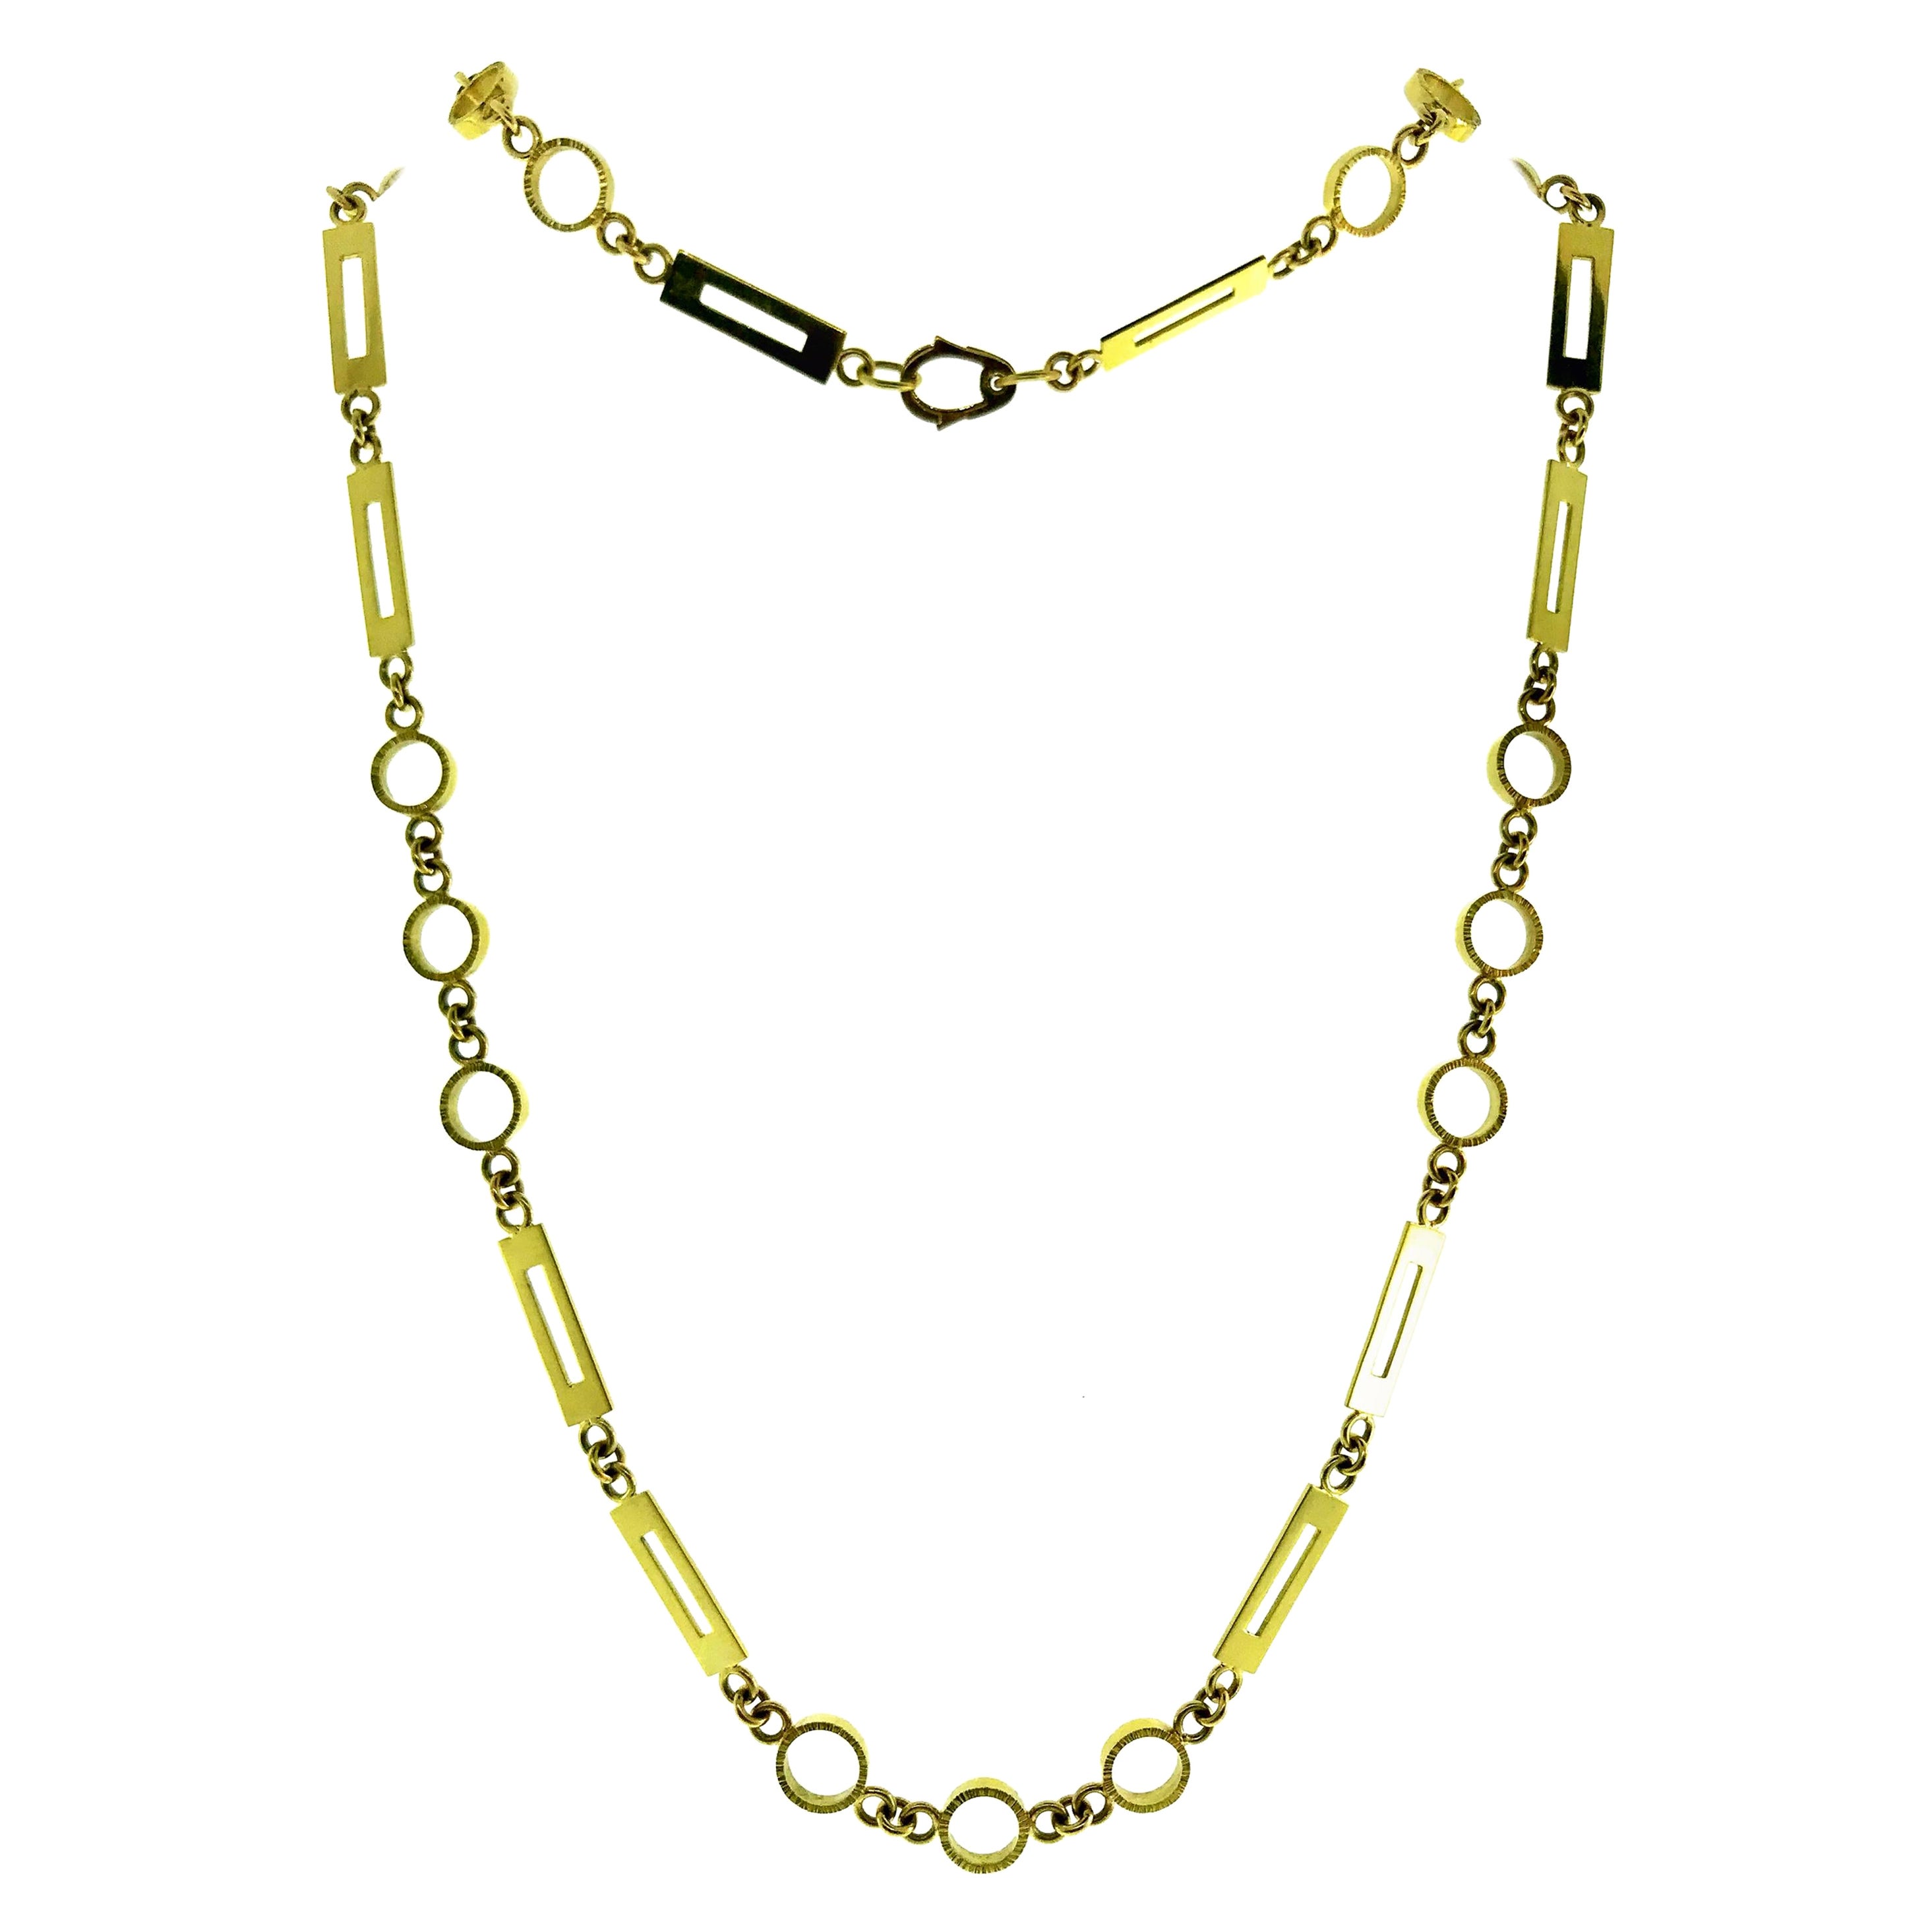 Halskette aus 18 Karat Gelbgold mit Gliederkette